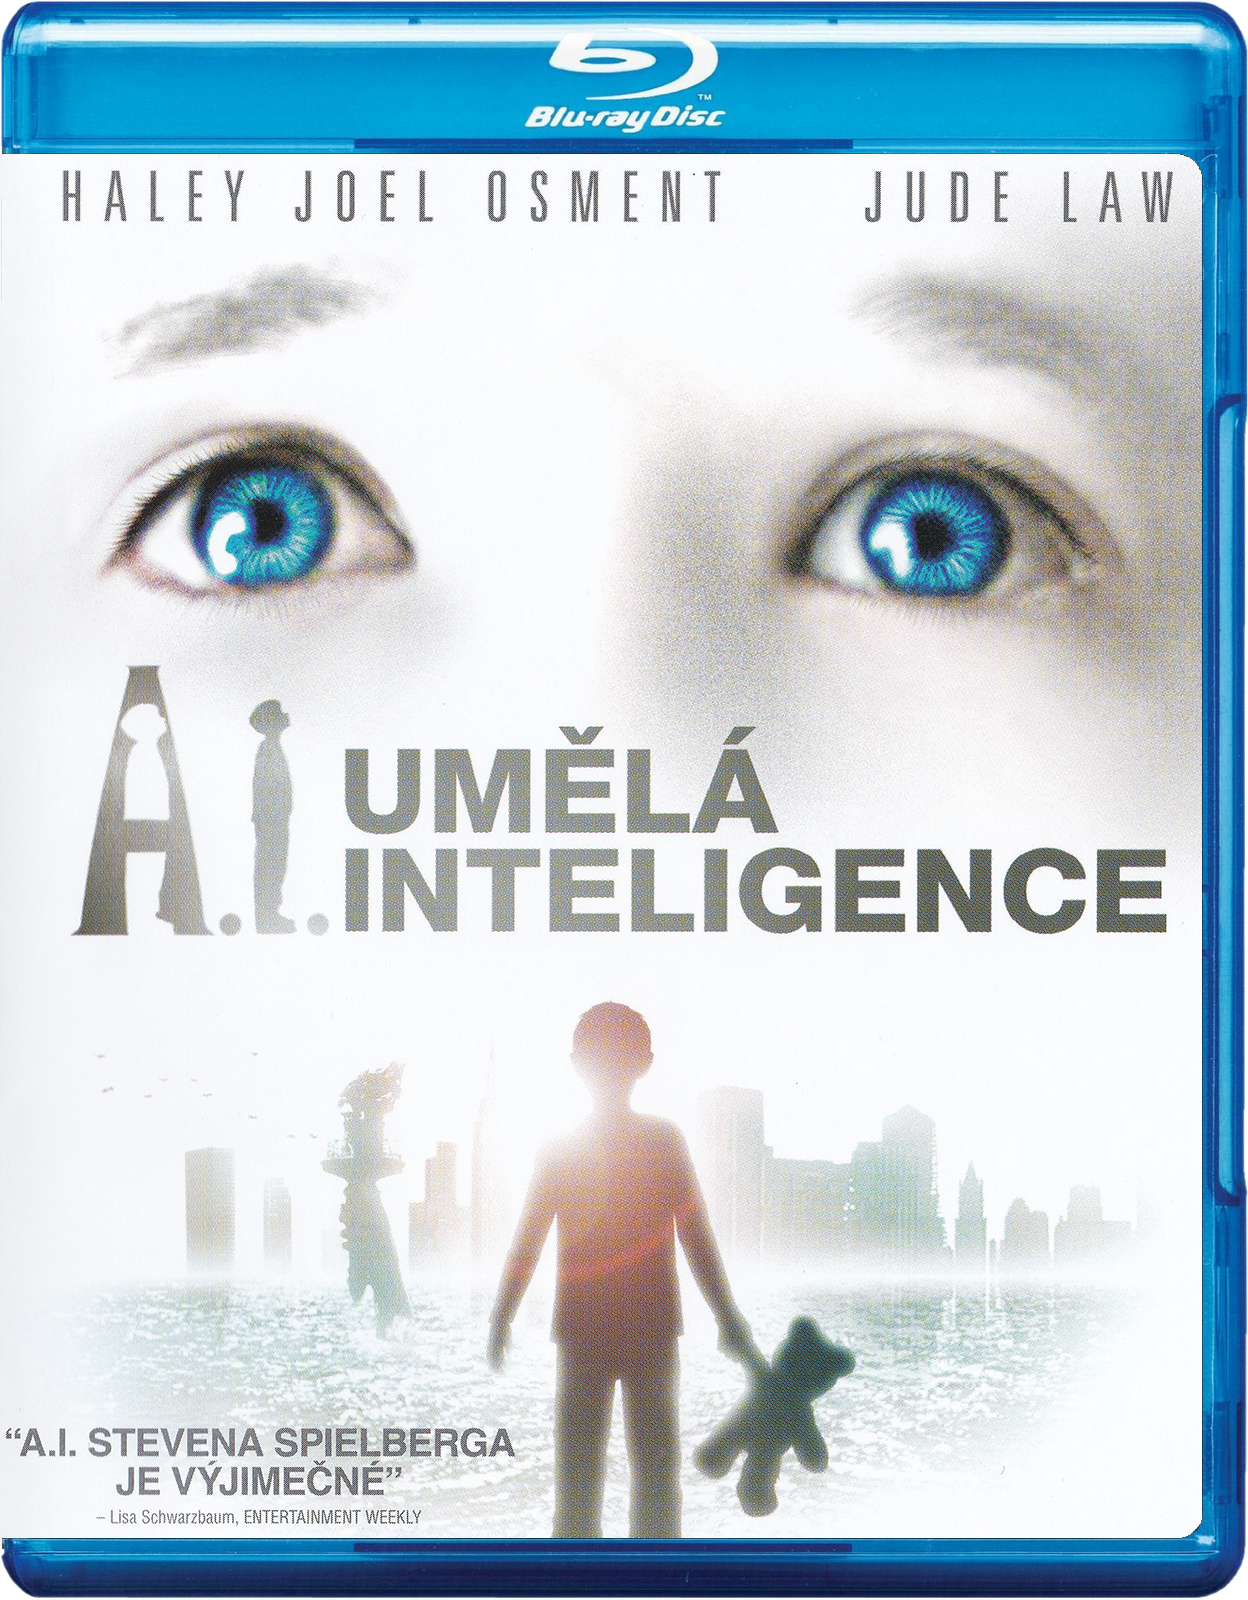 Stiahni si HD Filmy A.I. Umela inteligence / Artificial Intelligence: AI (2001)(CZ/EN)[1080pHD] = CSFD 77%